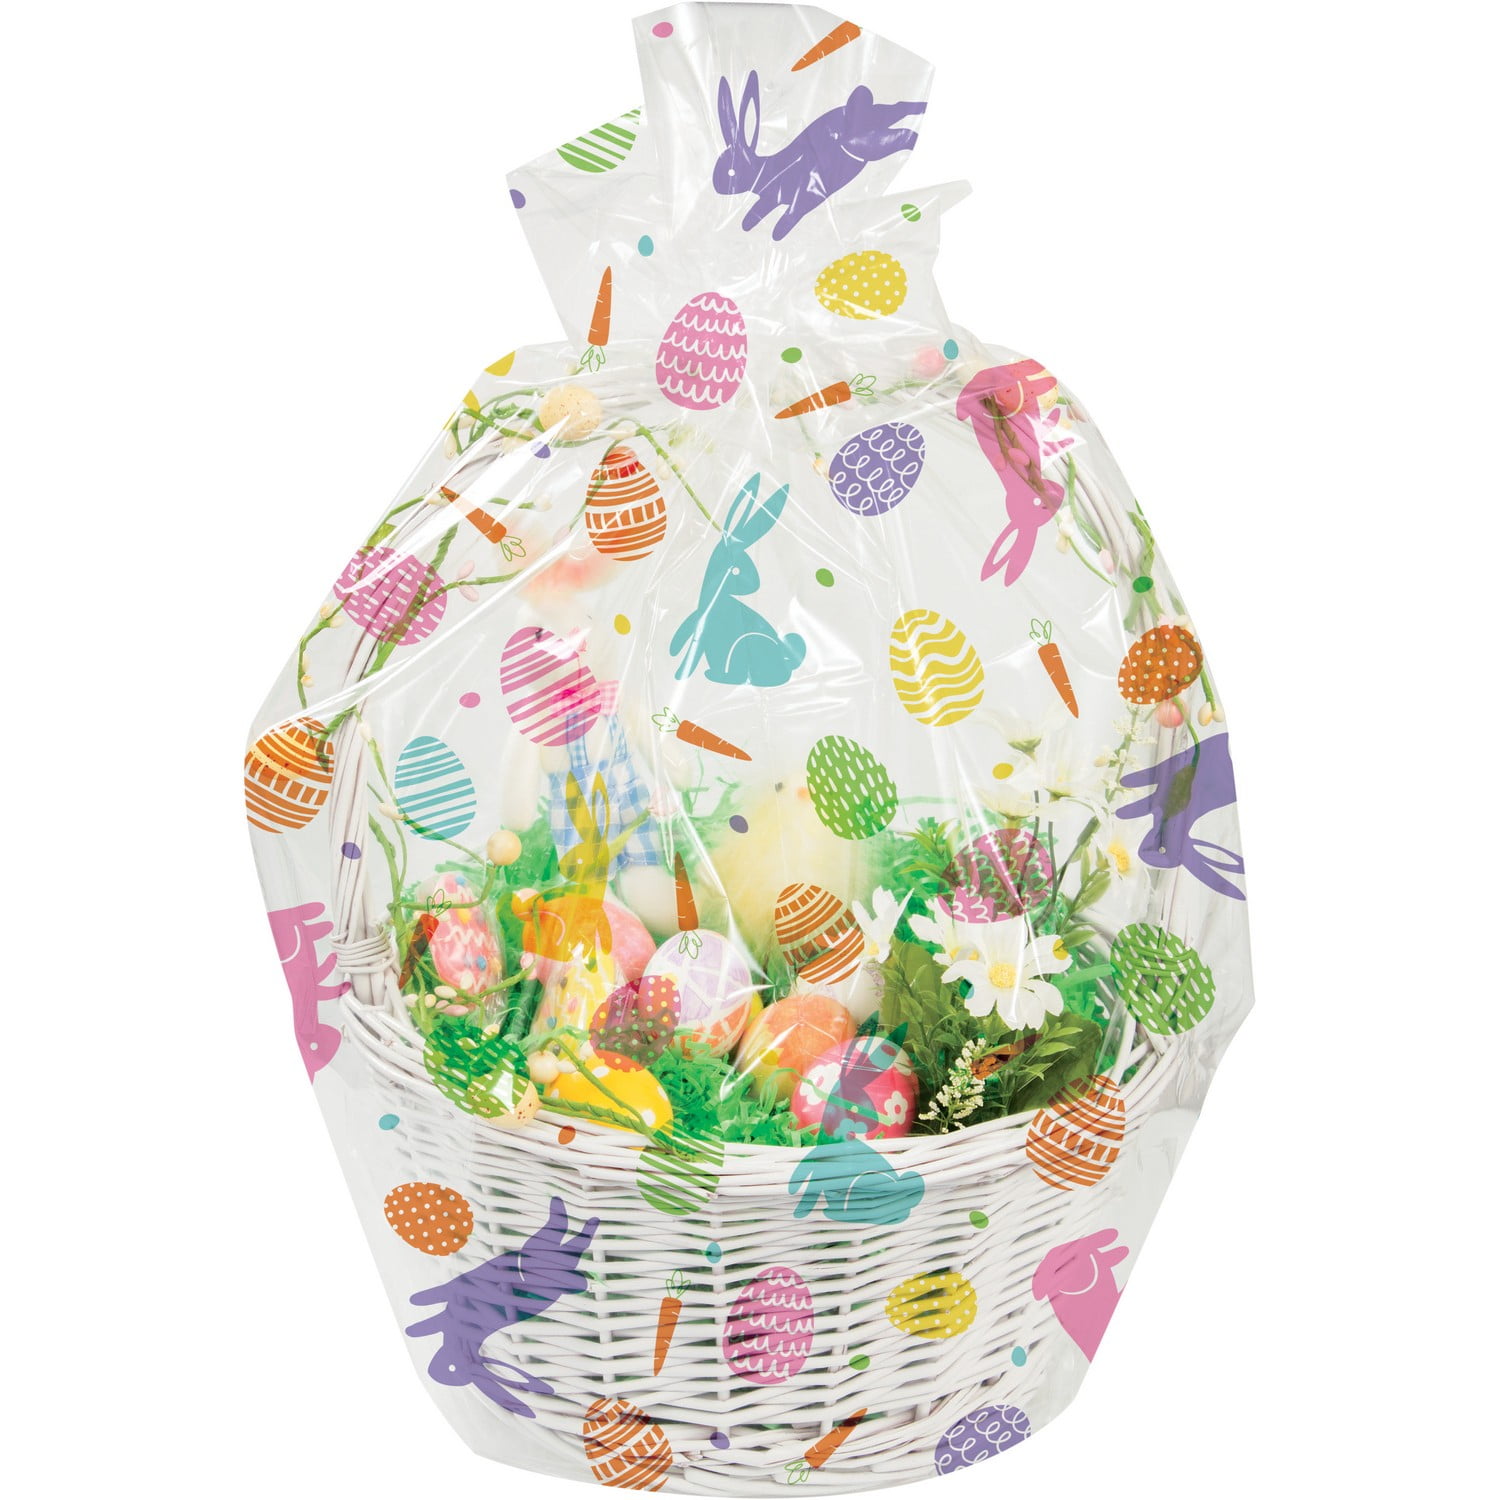 Diy Easter Baskets Crafts Kits For Kids Children Sewing Weaving 4 Pack  Easter  Fruugo IN